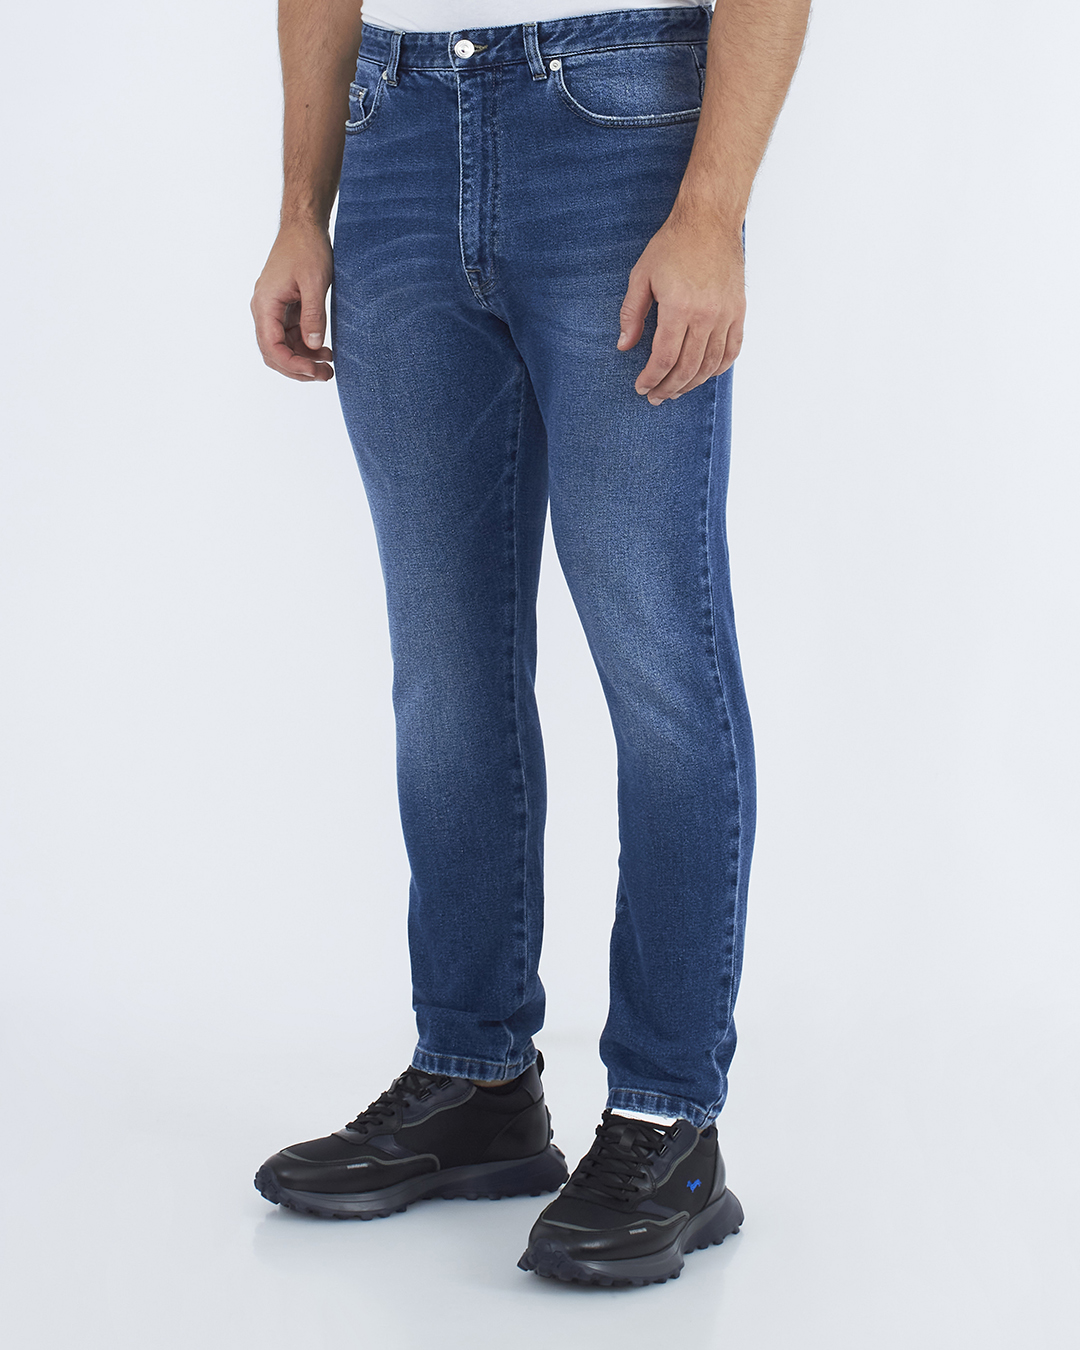 джинсы № 21 N1M2202 синий 34, размер 34 - фото 3